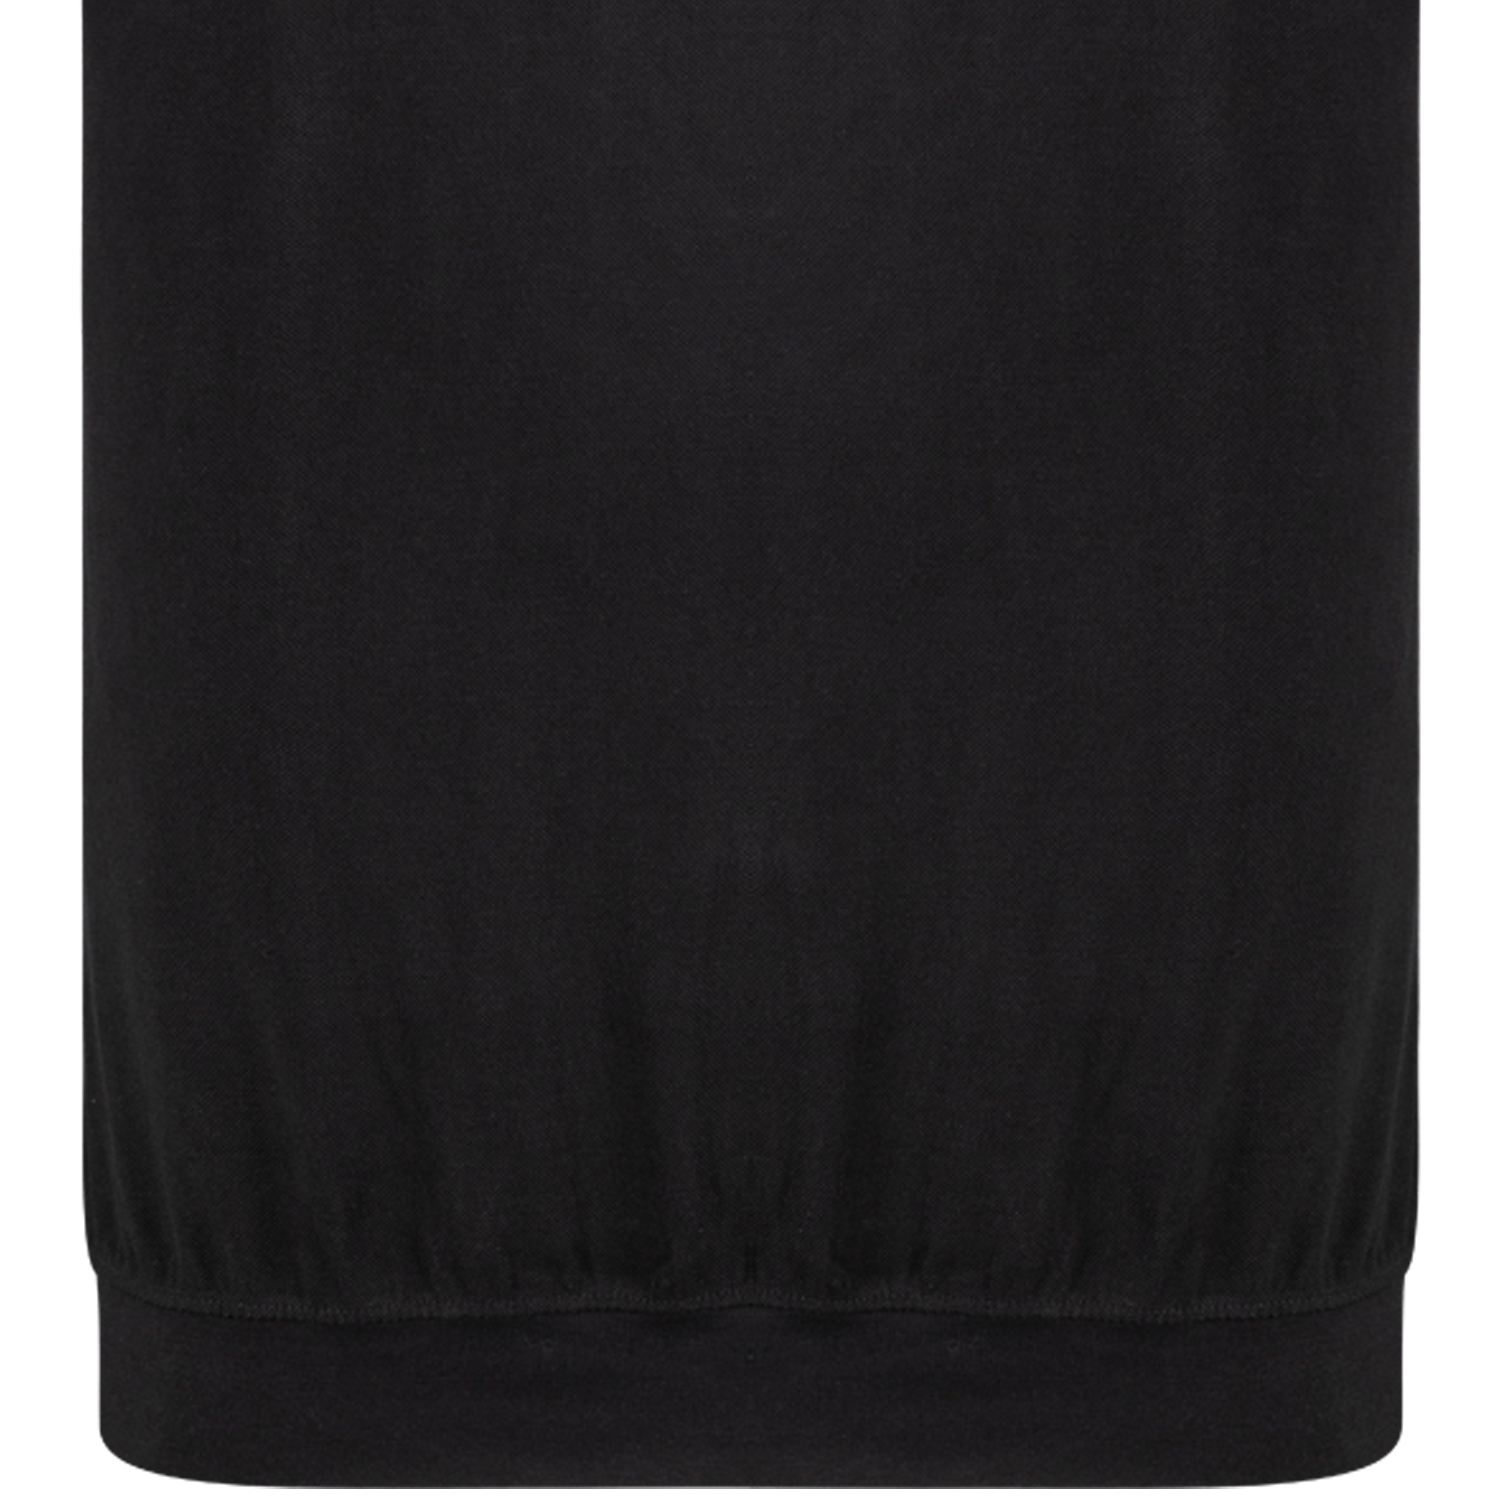 Herren Pique Poloshirt mit Bund kurzarm Serie Kadir REGULAR FIT von Adamo schwarz in Übergrößen 2XL - 10XL